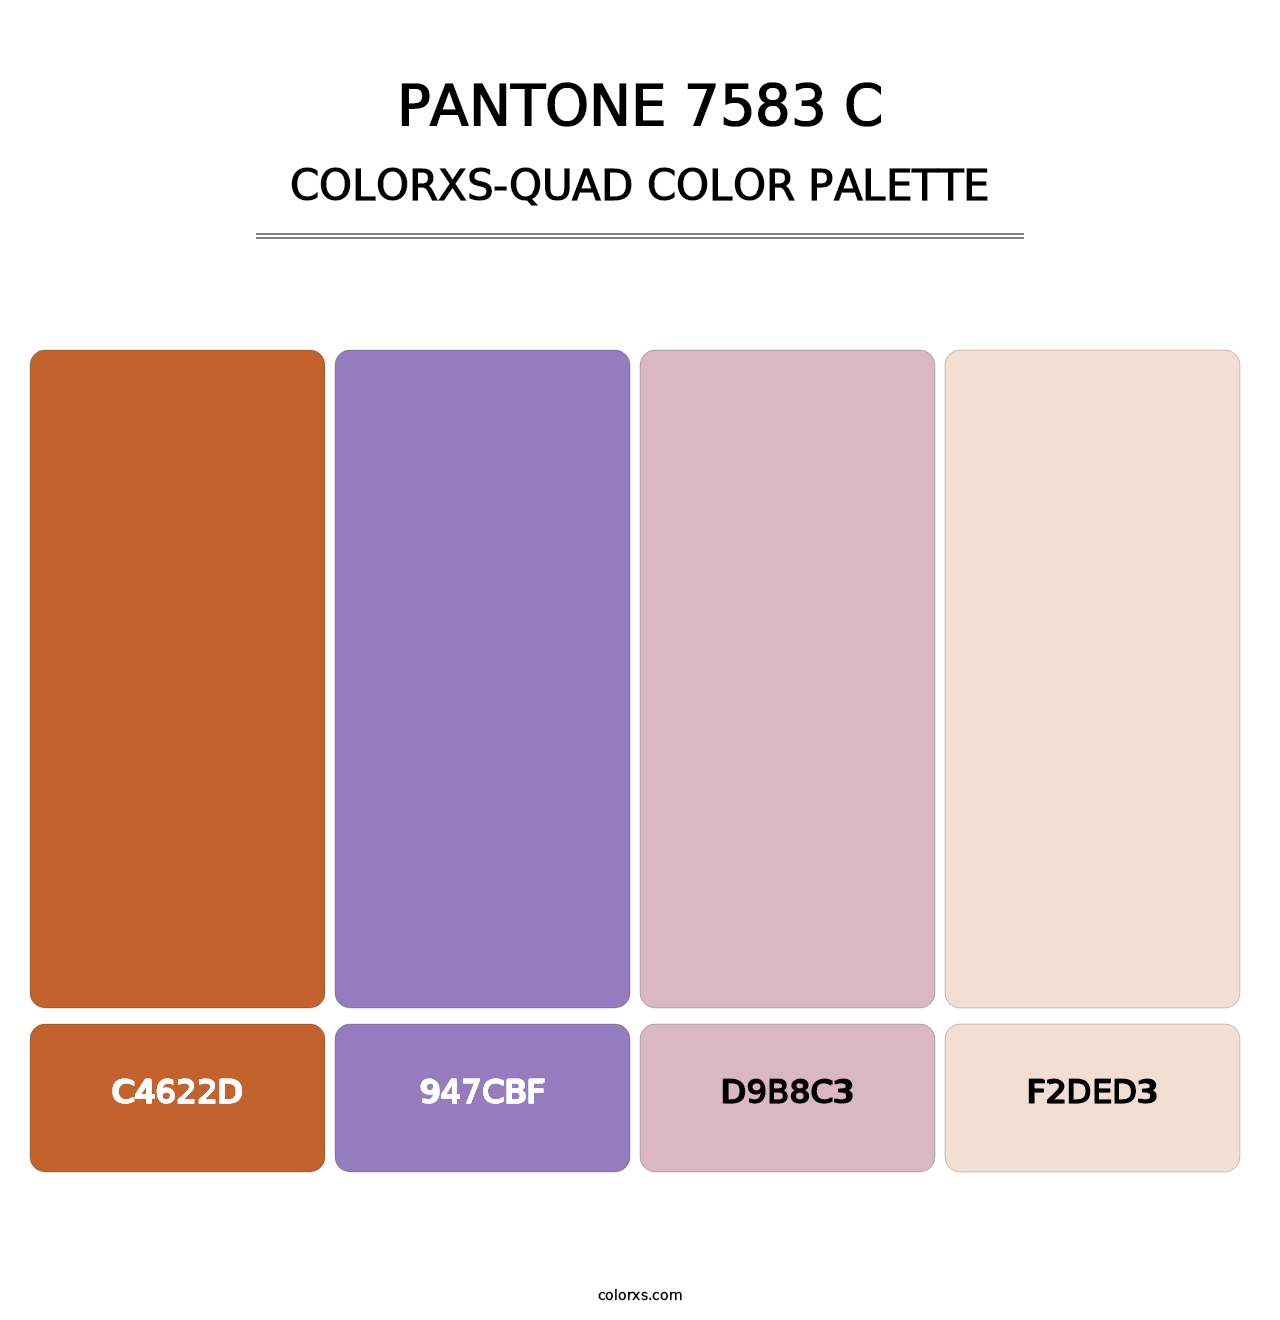 PANTONE 7583 C - Colorxs Quad Palette